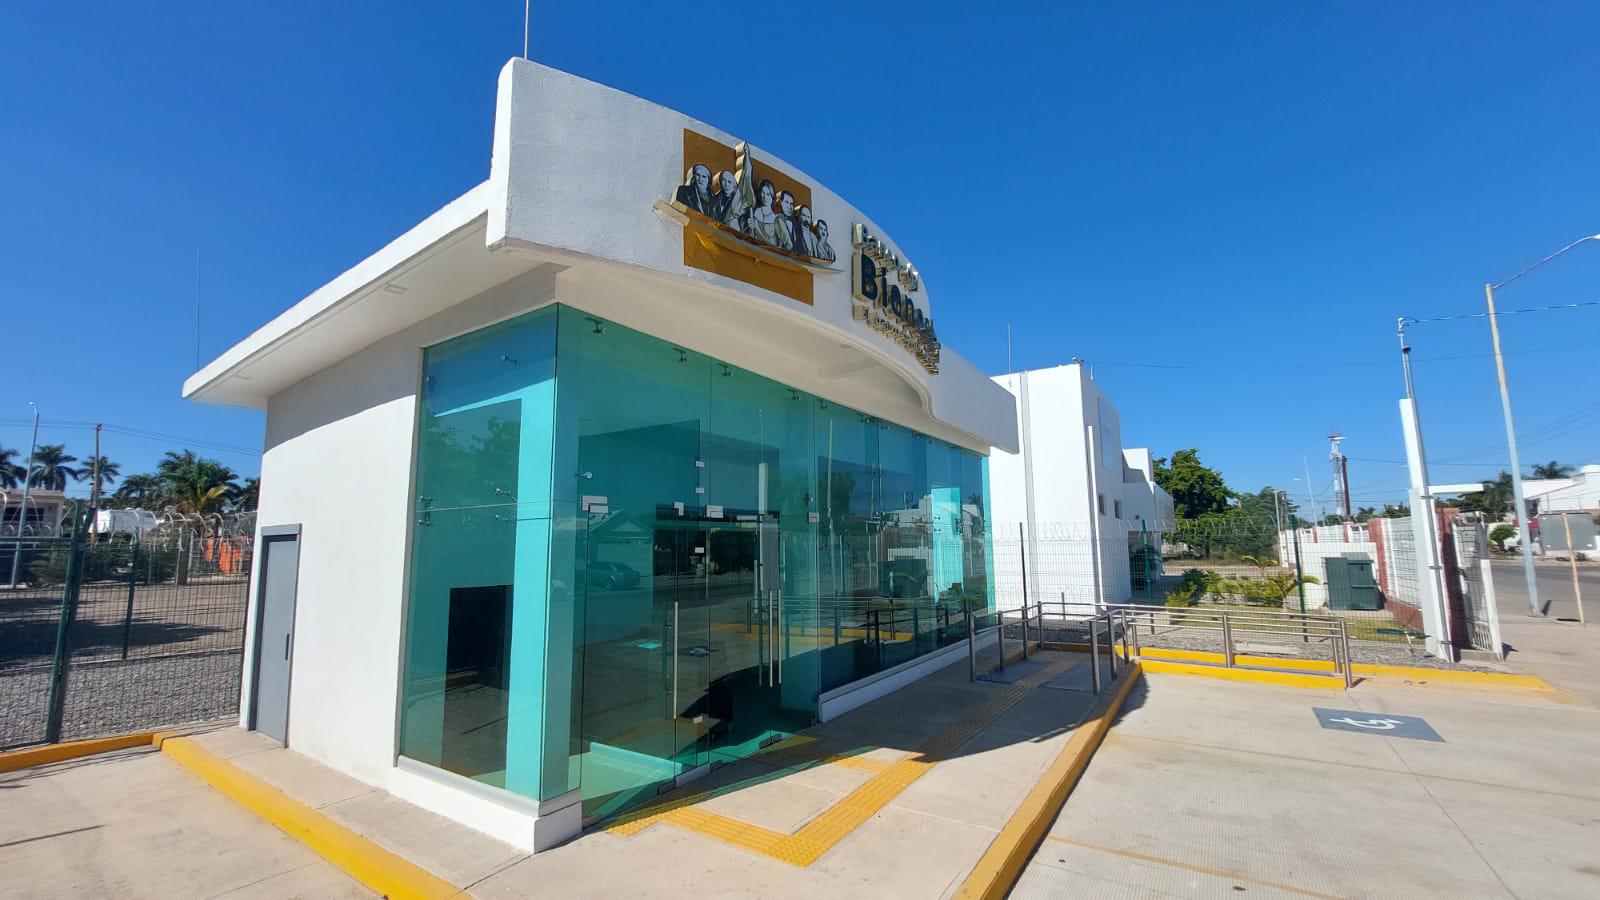 $!En Guasave abrirán primera sucursal del Banco del Bienestar en Sinaloa, anuncia delegado